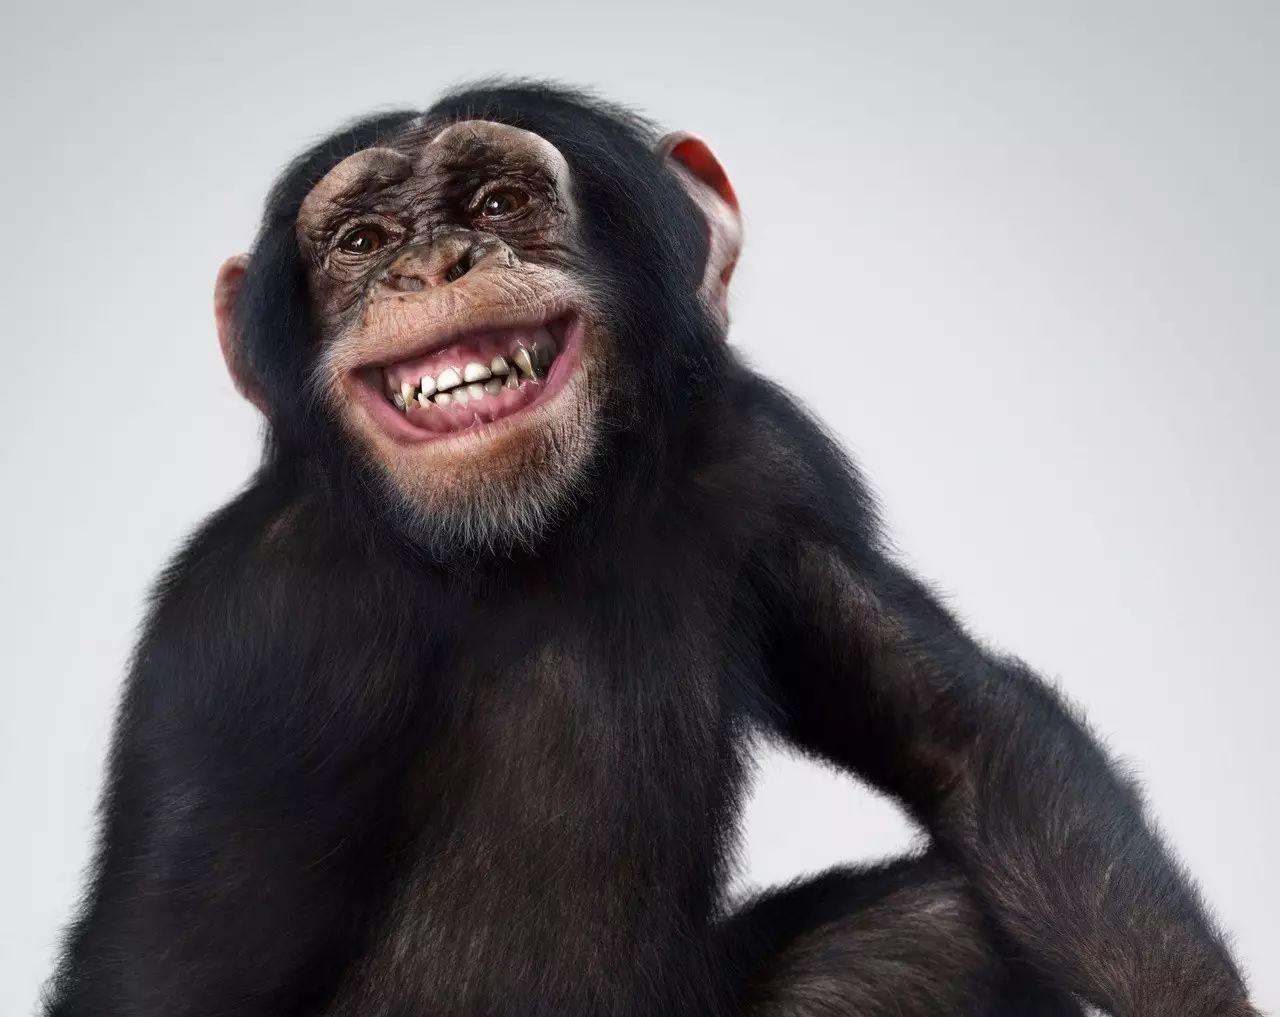 大猩猩微笑图片图片